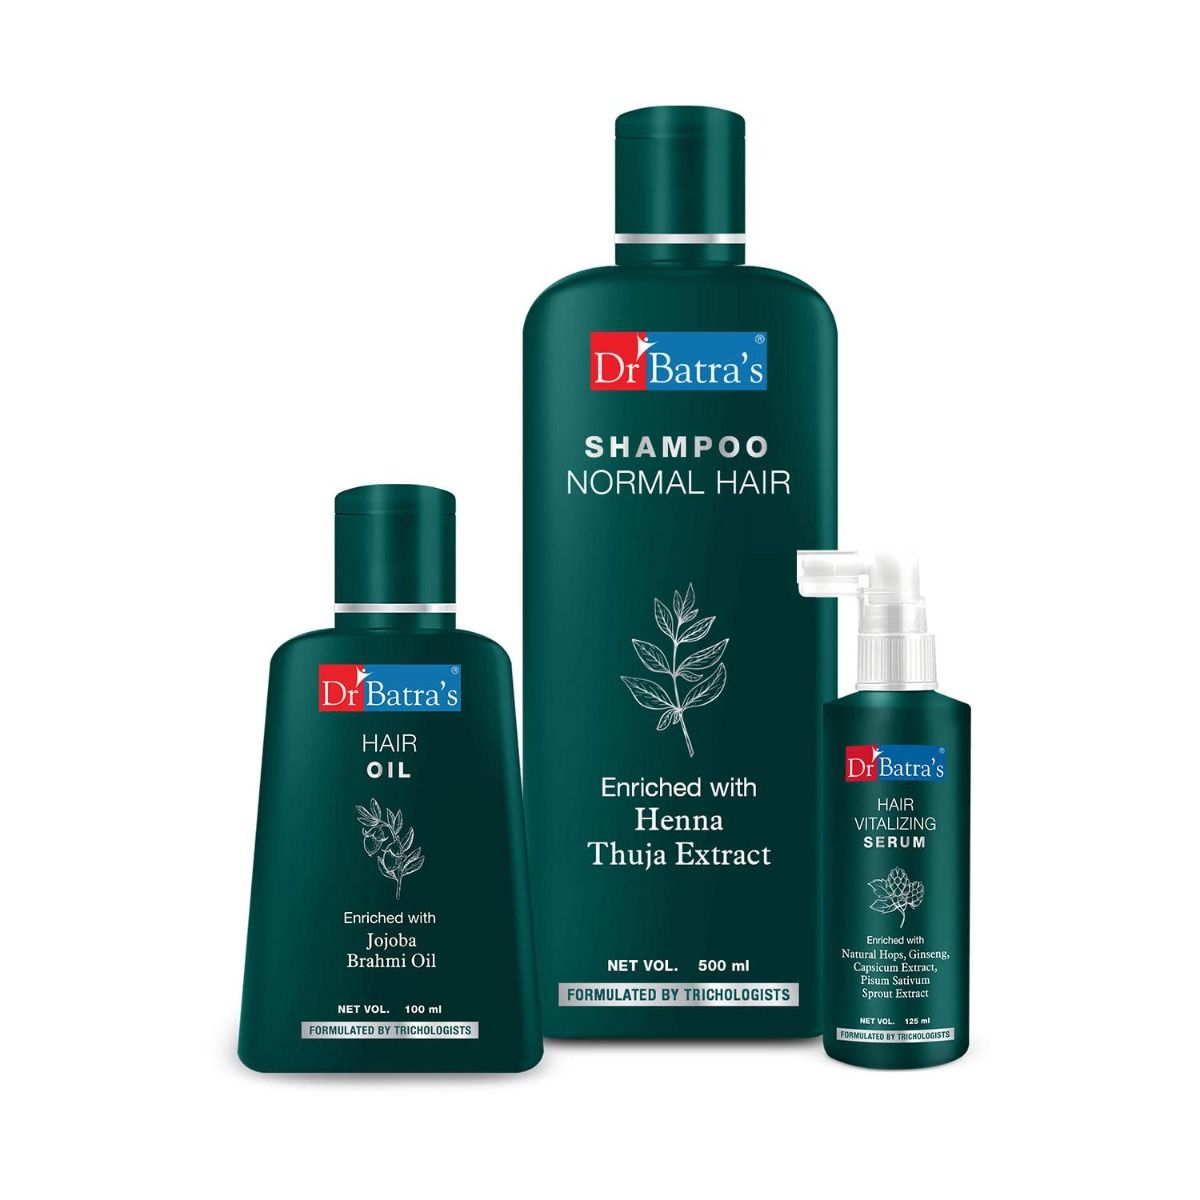     			Dr Batra's Hair Vitalizing Serum 125 ml, Normal Shampoo - 500 ml and Hair Oil - 100 ml